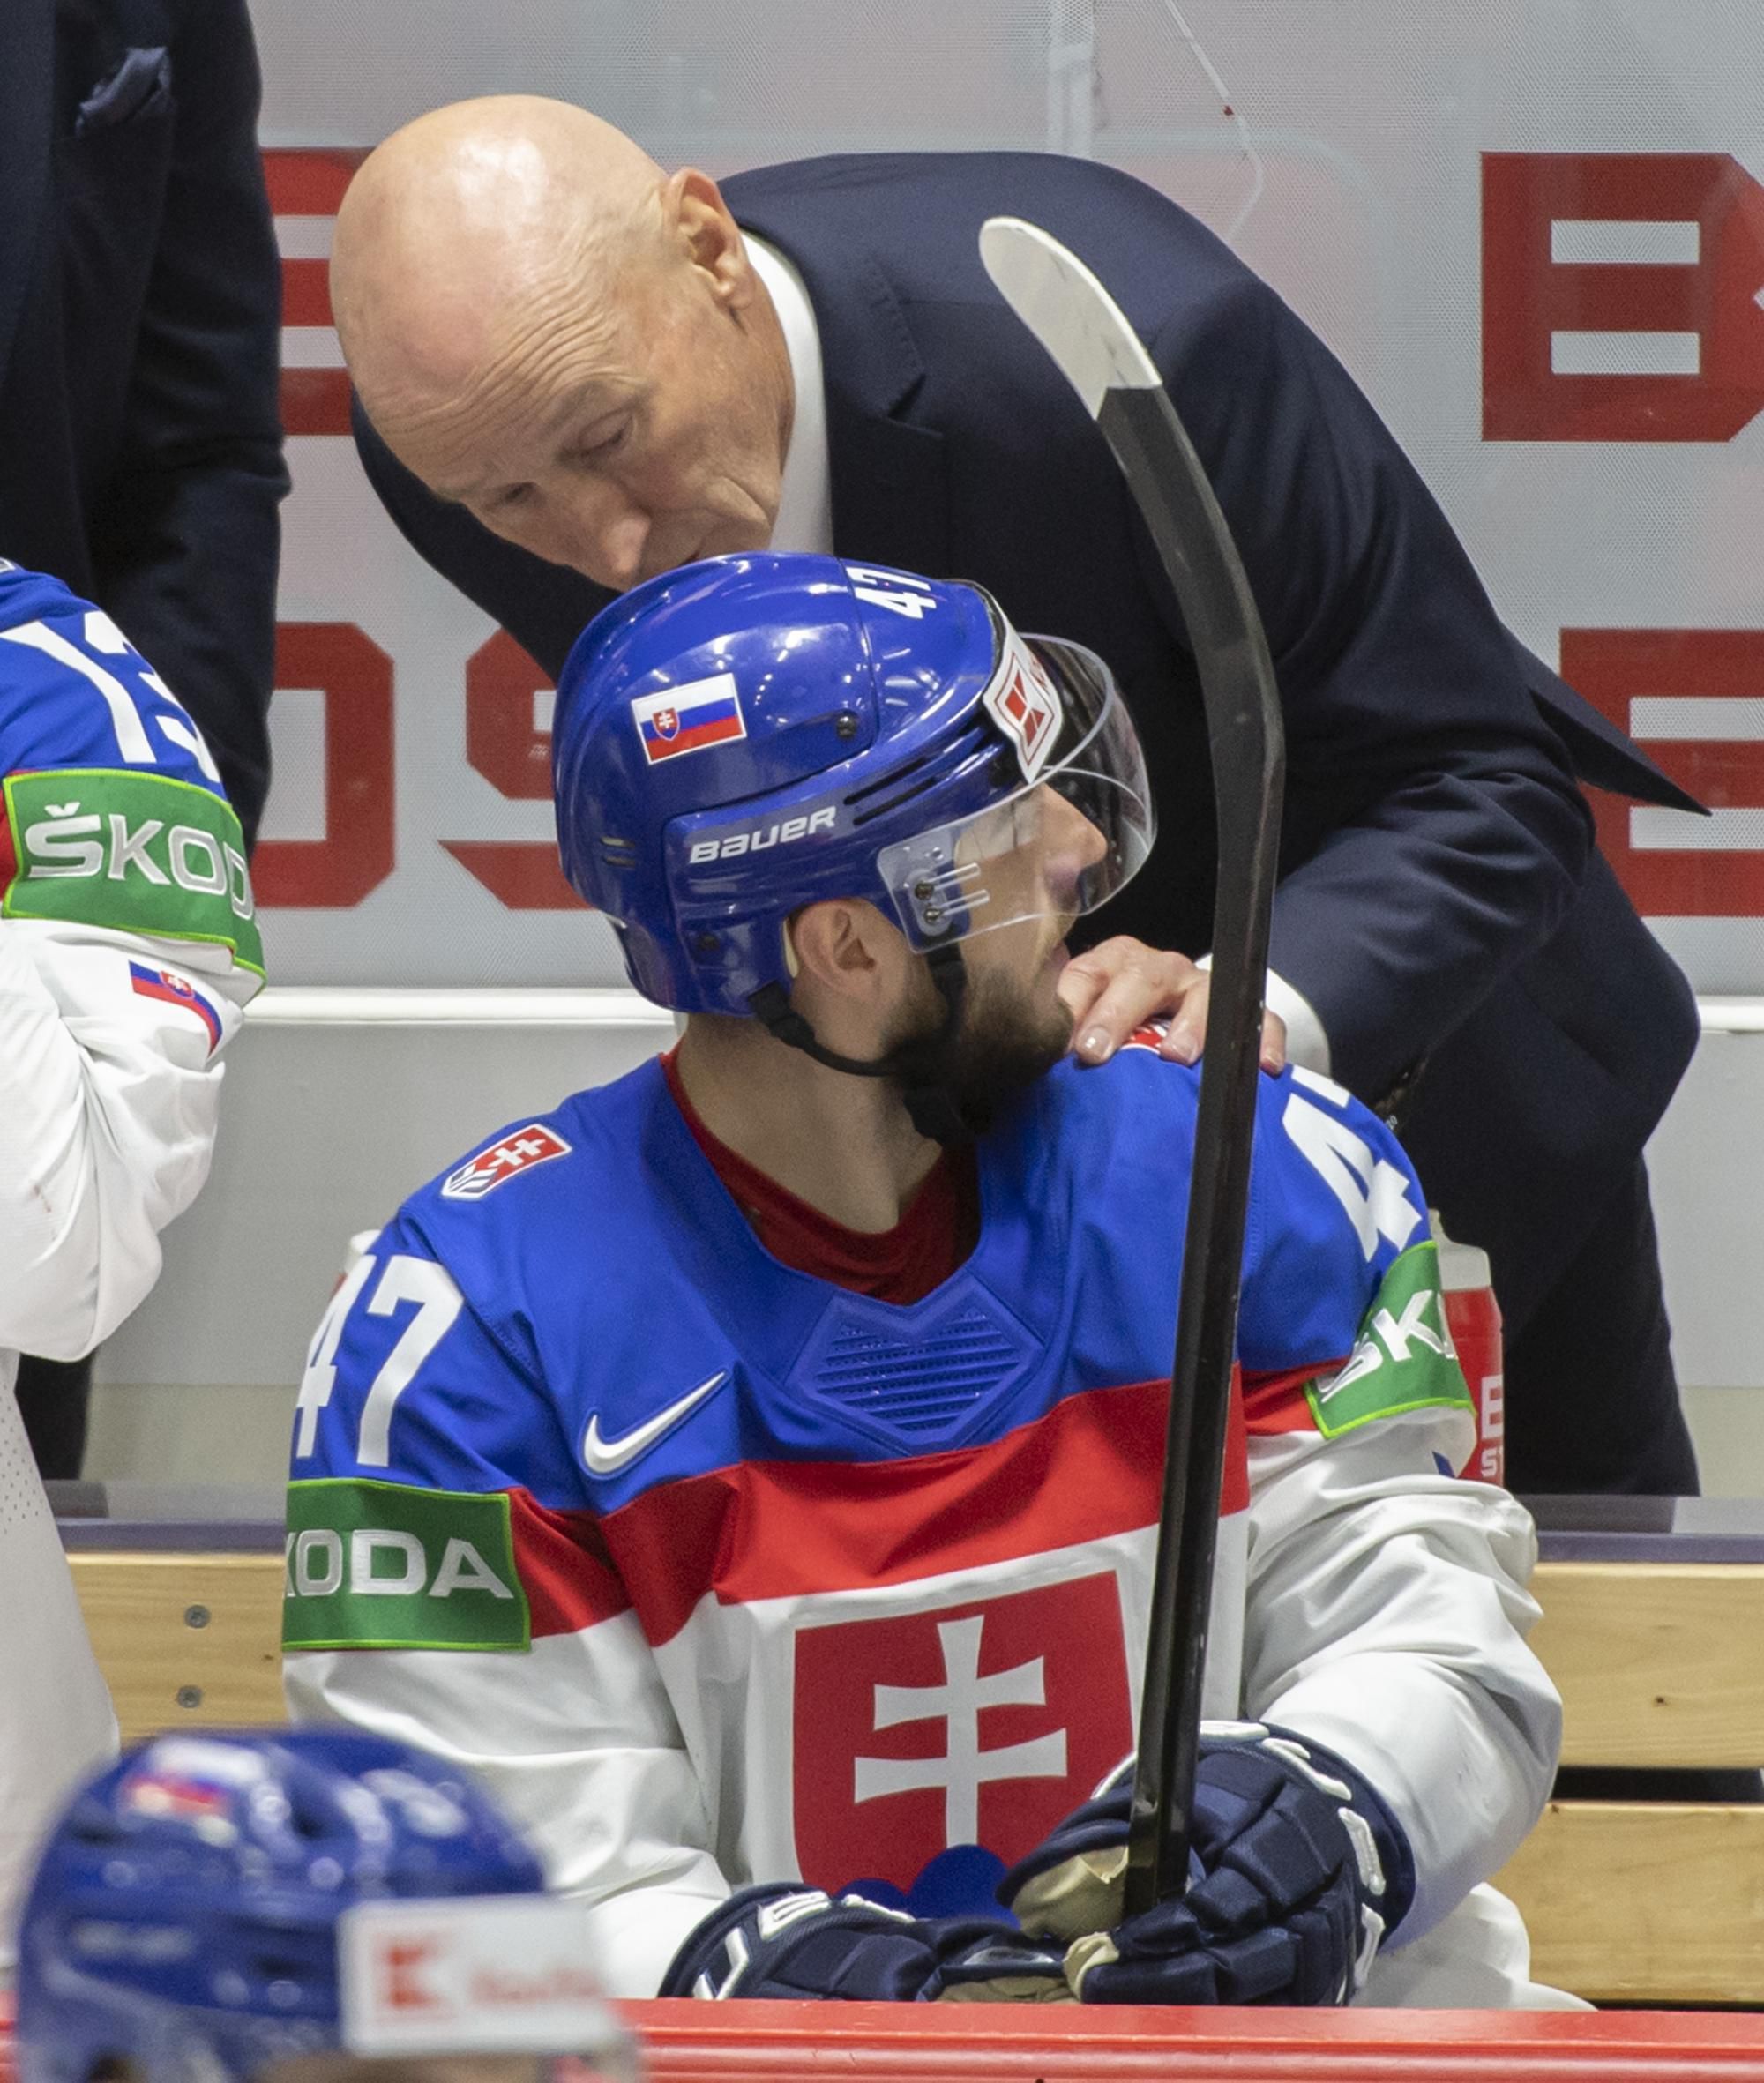 MS v hokeji 2022: Švajčiarsko - Slovensko (Craig Ramsay a Mário Lunter)